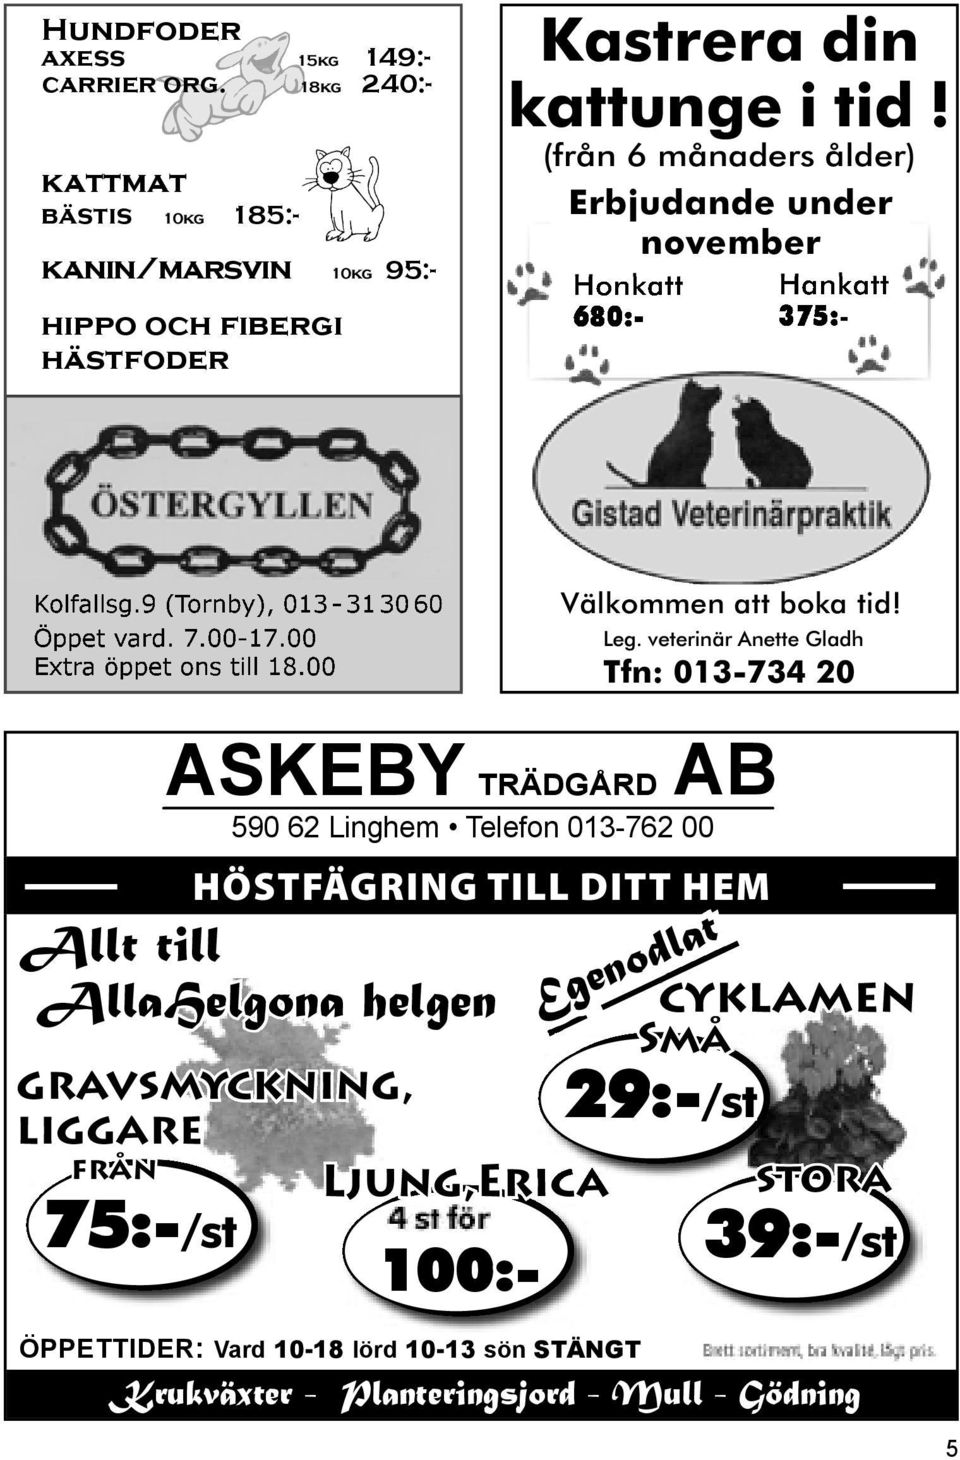 9 (Tornby), 013-31 30 60 Öppet vard. 7.00-17.00 Extra öppet ons till 18.